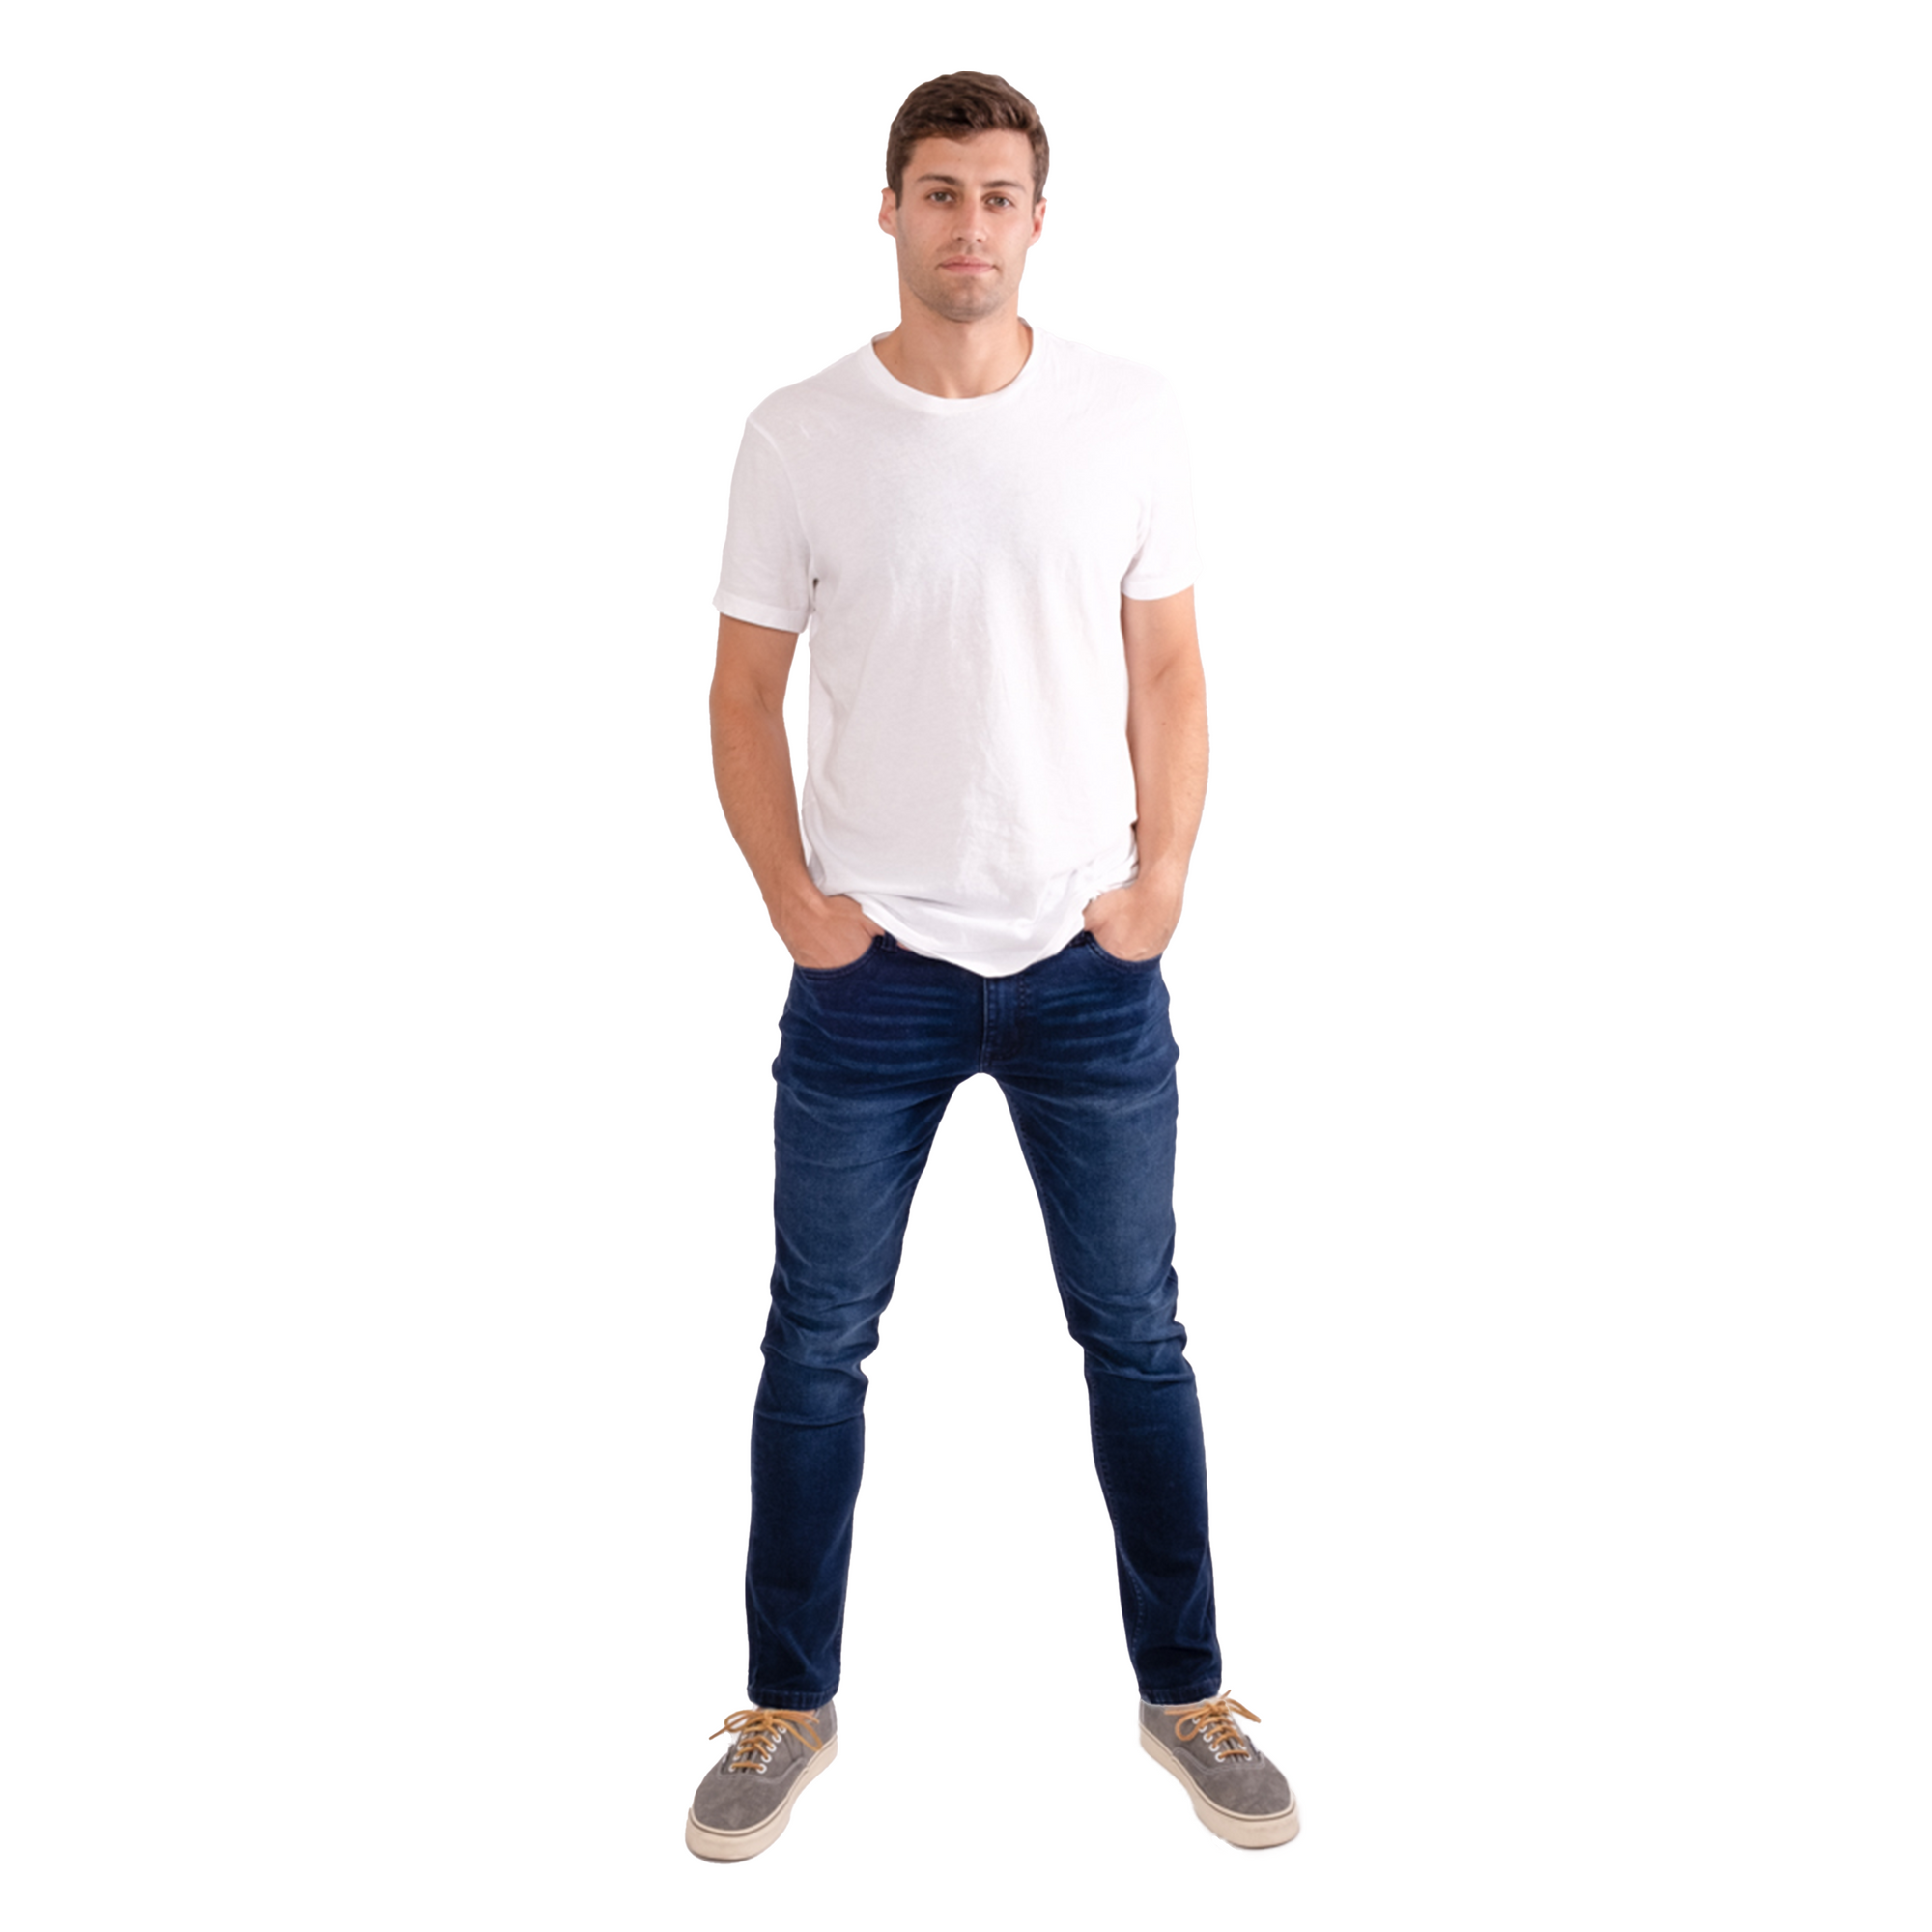 Men's Skinny Leg Ripped Knees White Jeans